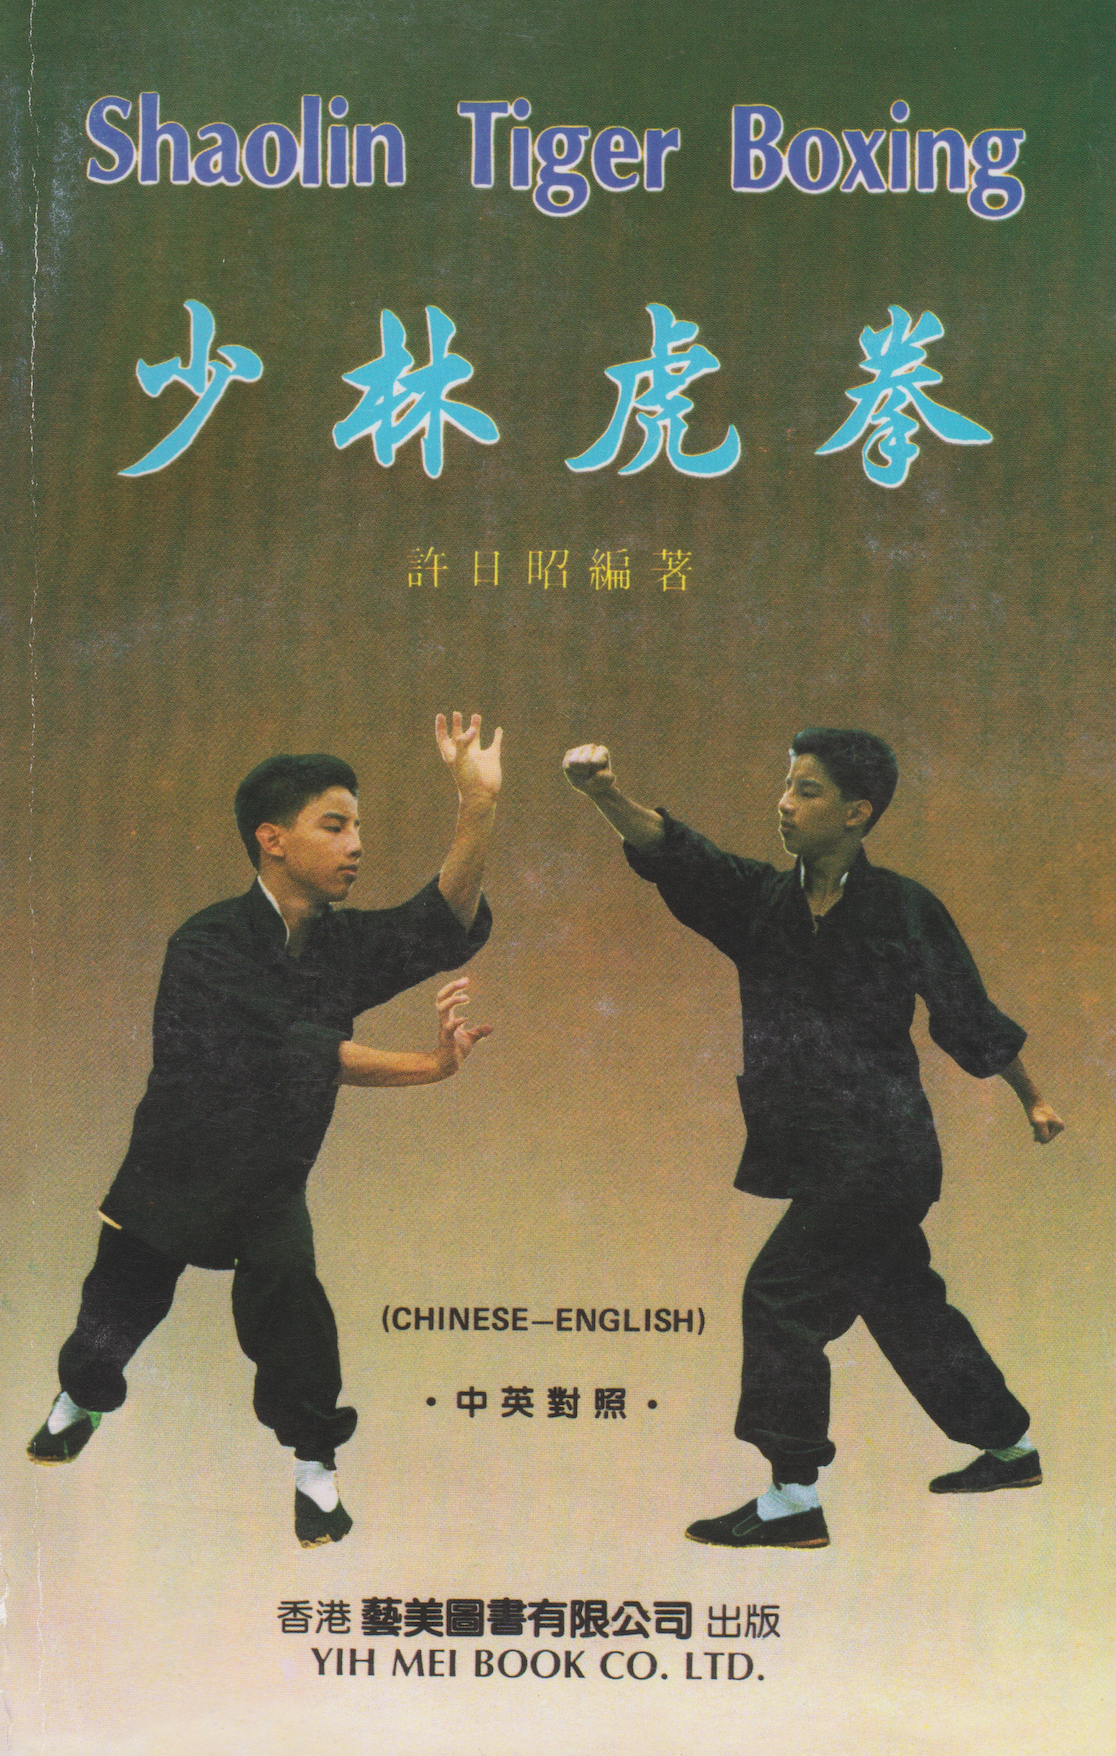 Shaolin Tiger Boxing Book by Xu Ri Zhao